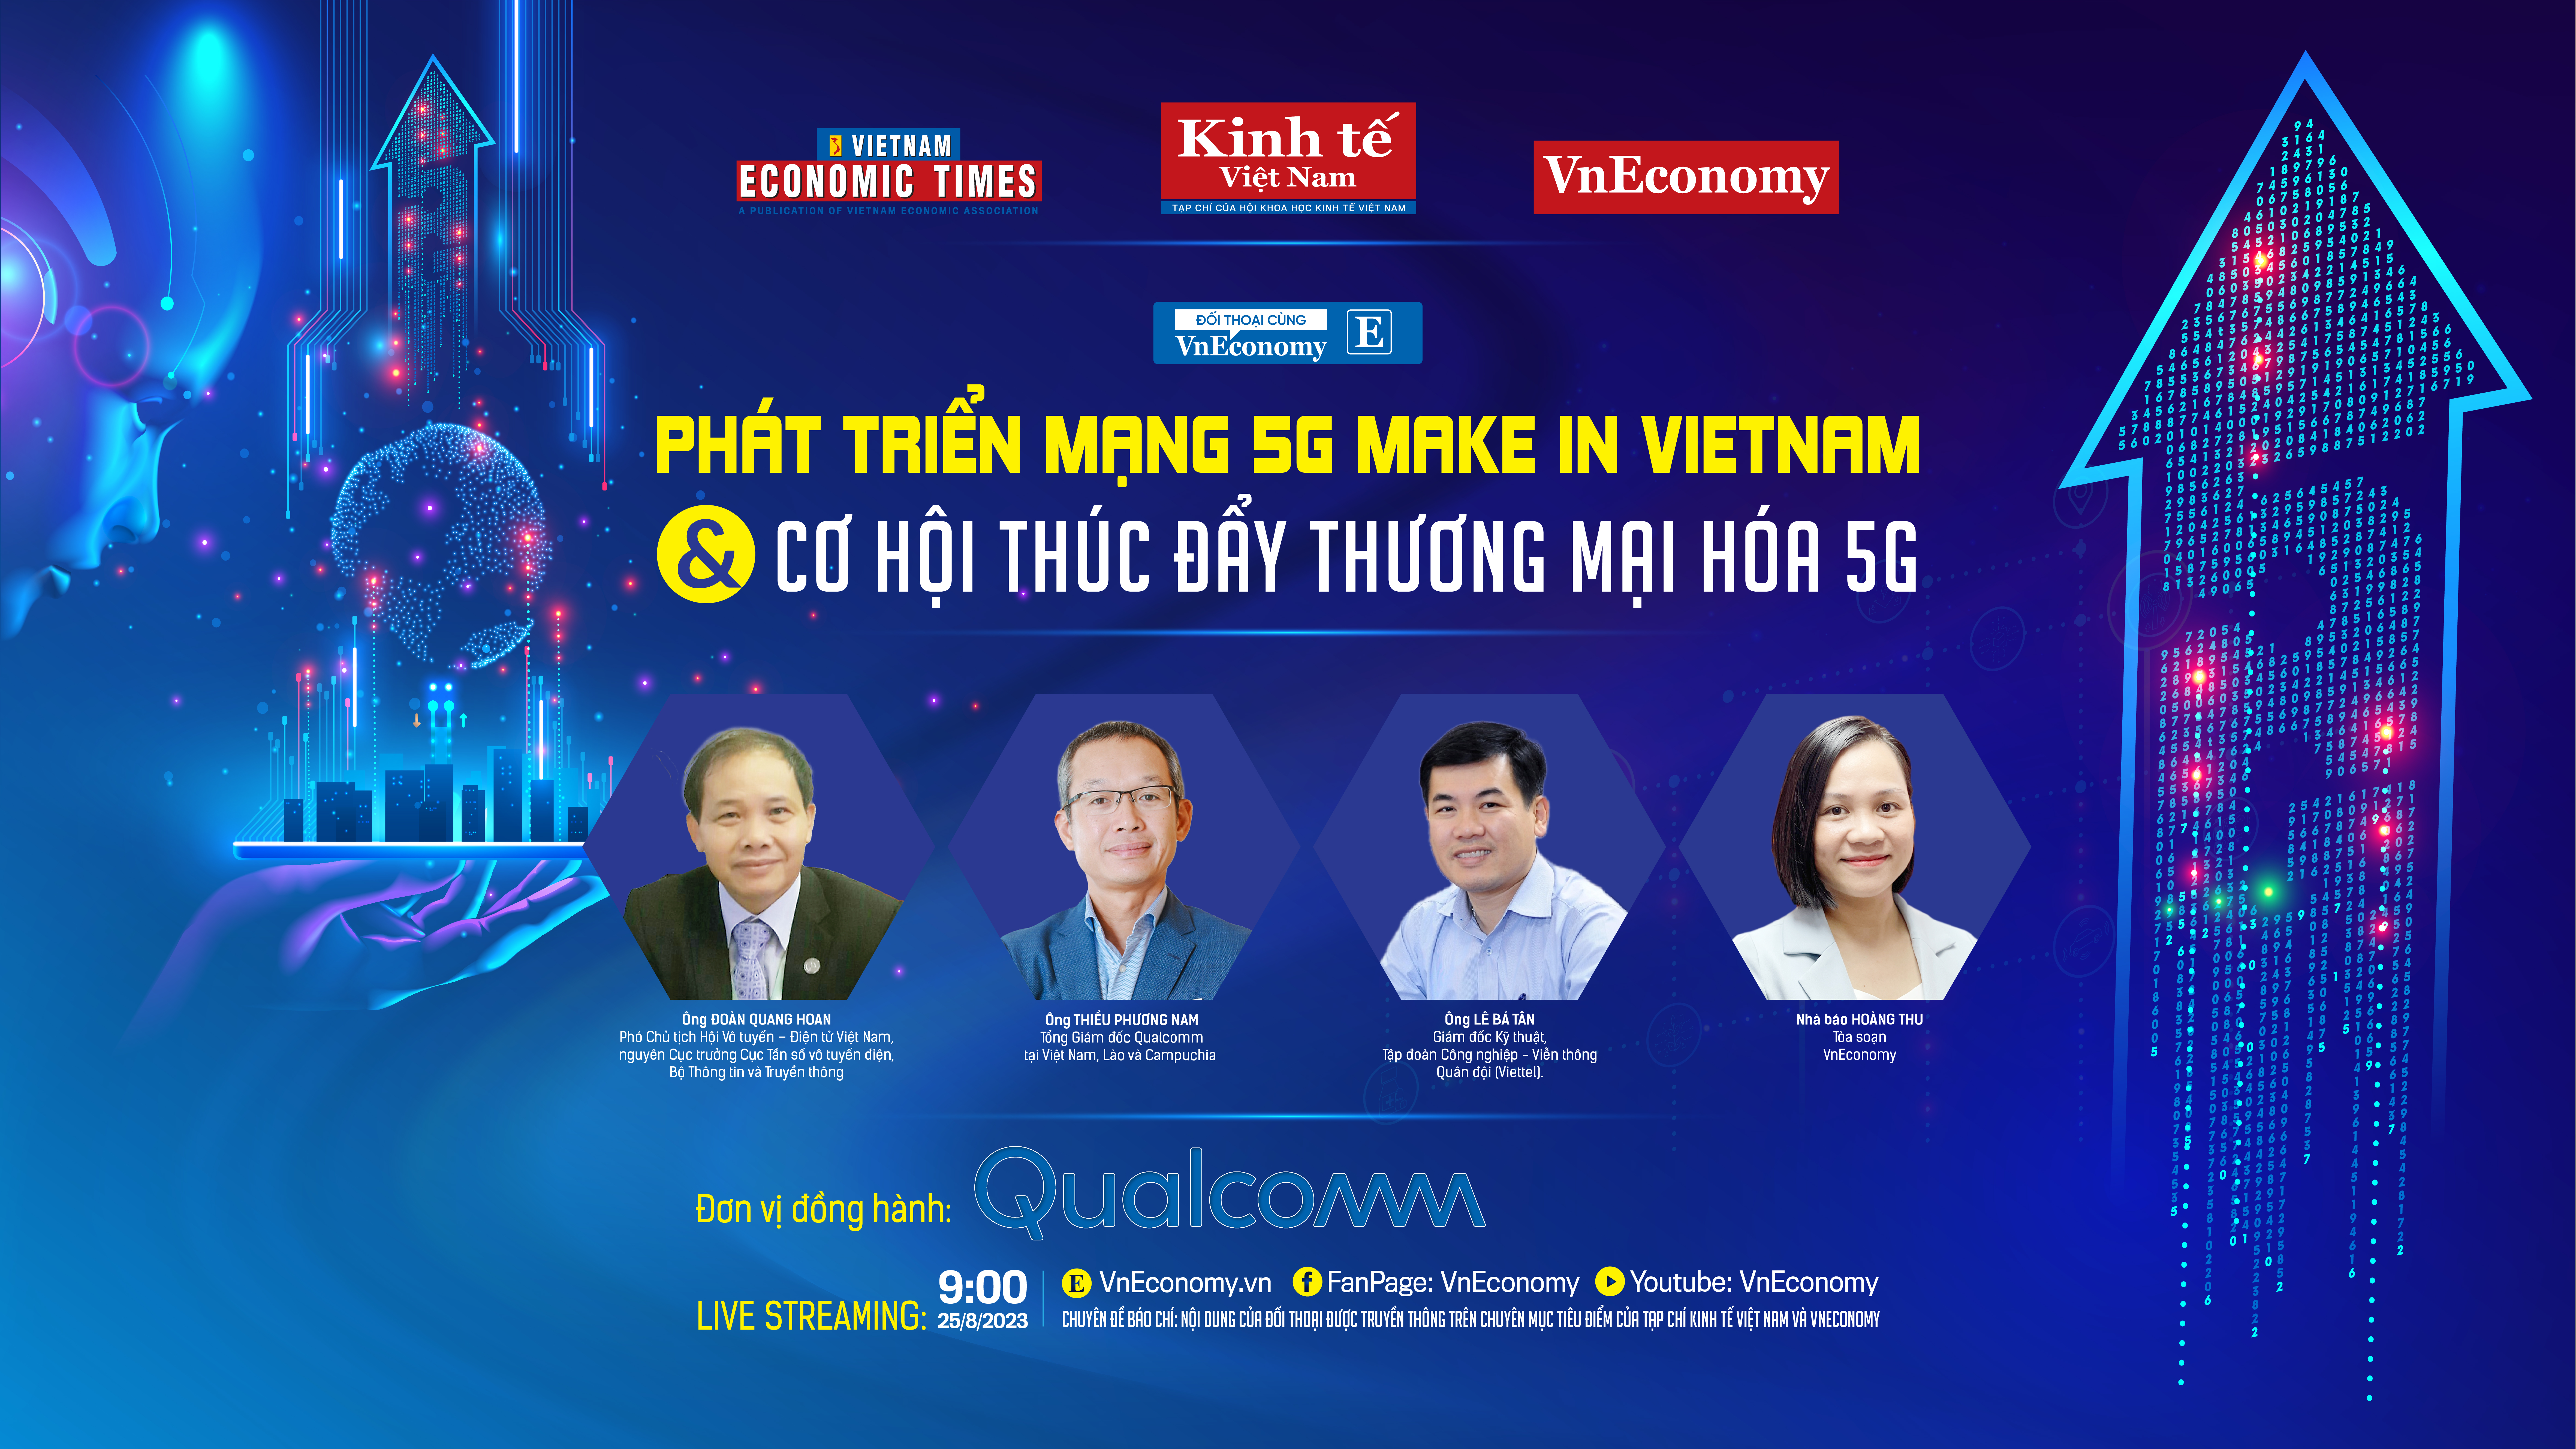 Thời điểm chín muồi để Việt Nam thương mại hóa 5G - Ảnh 1